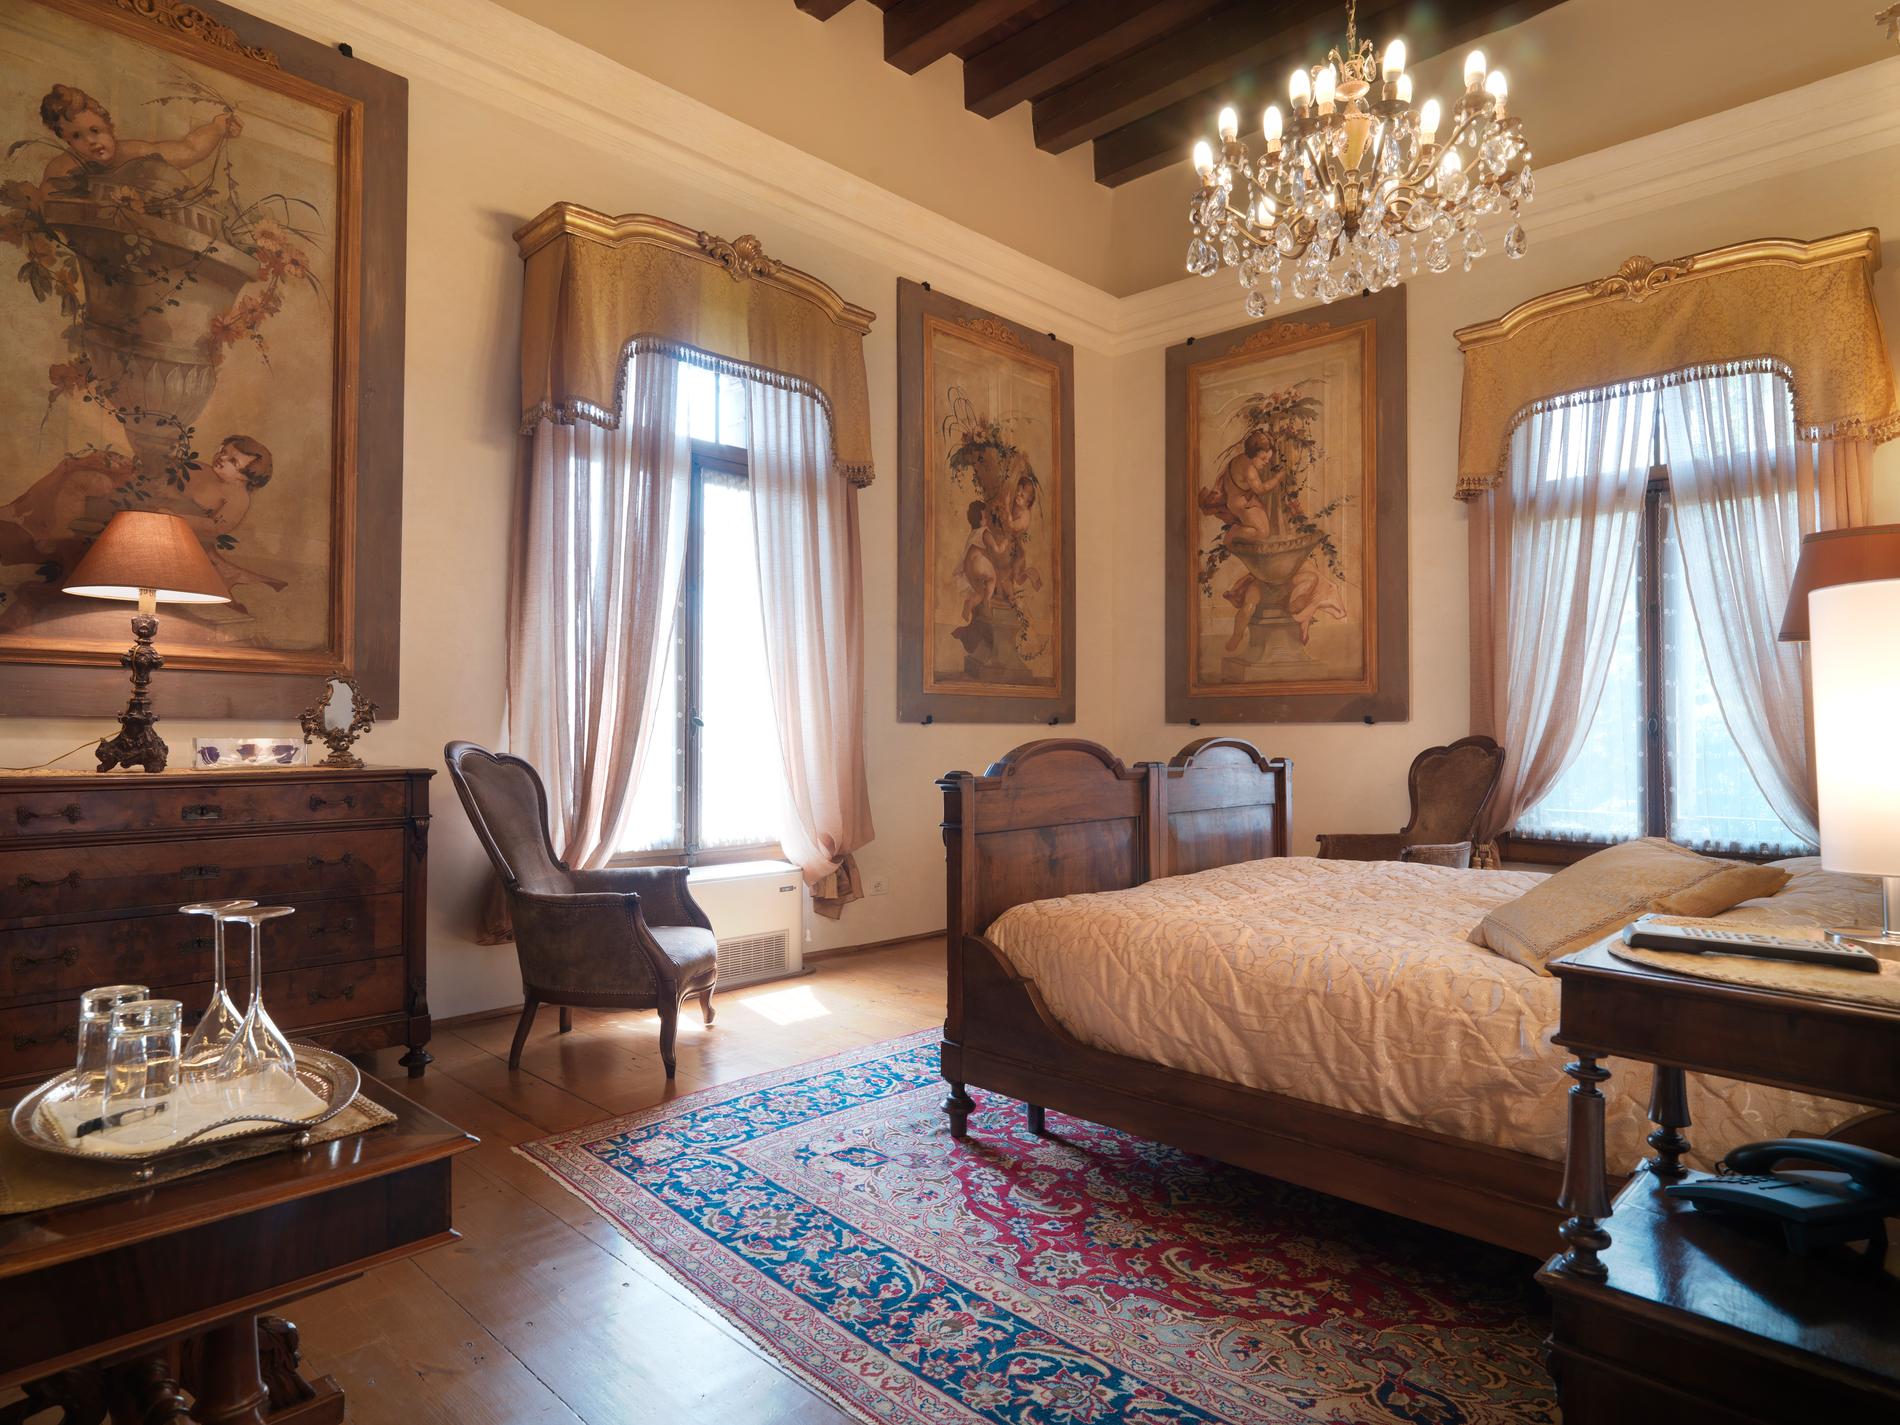 Relais Castello Bevilacqua, Italien  1300-talsslott och fyrstjärnigt hotell beläget i Verona. Slottet sägs vara hemsökt av sin tidigare ägare Guglielmo Bevilacqua som omkom här i en brand 1884. Dubbelrum från 1886 kr.